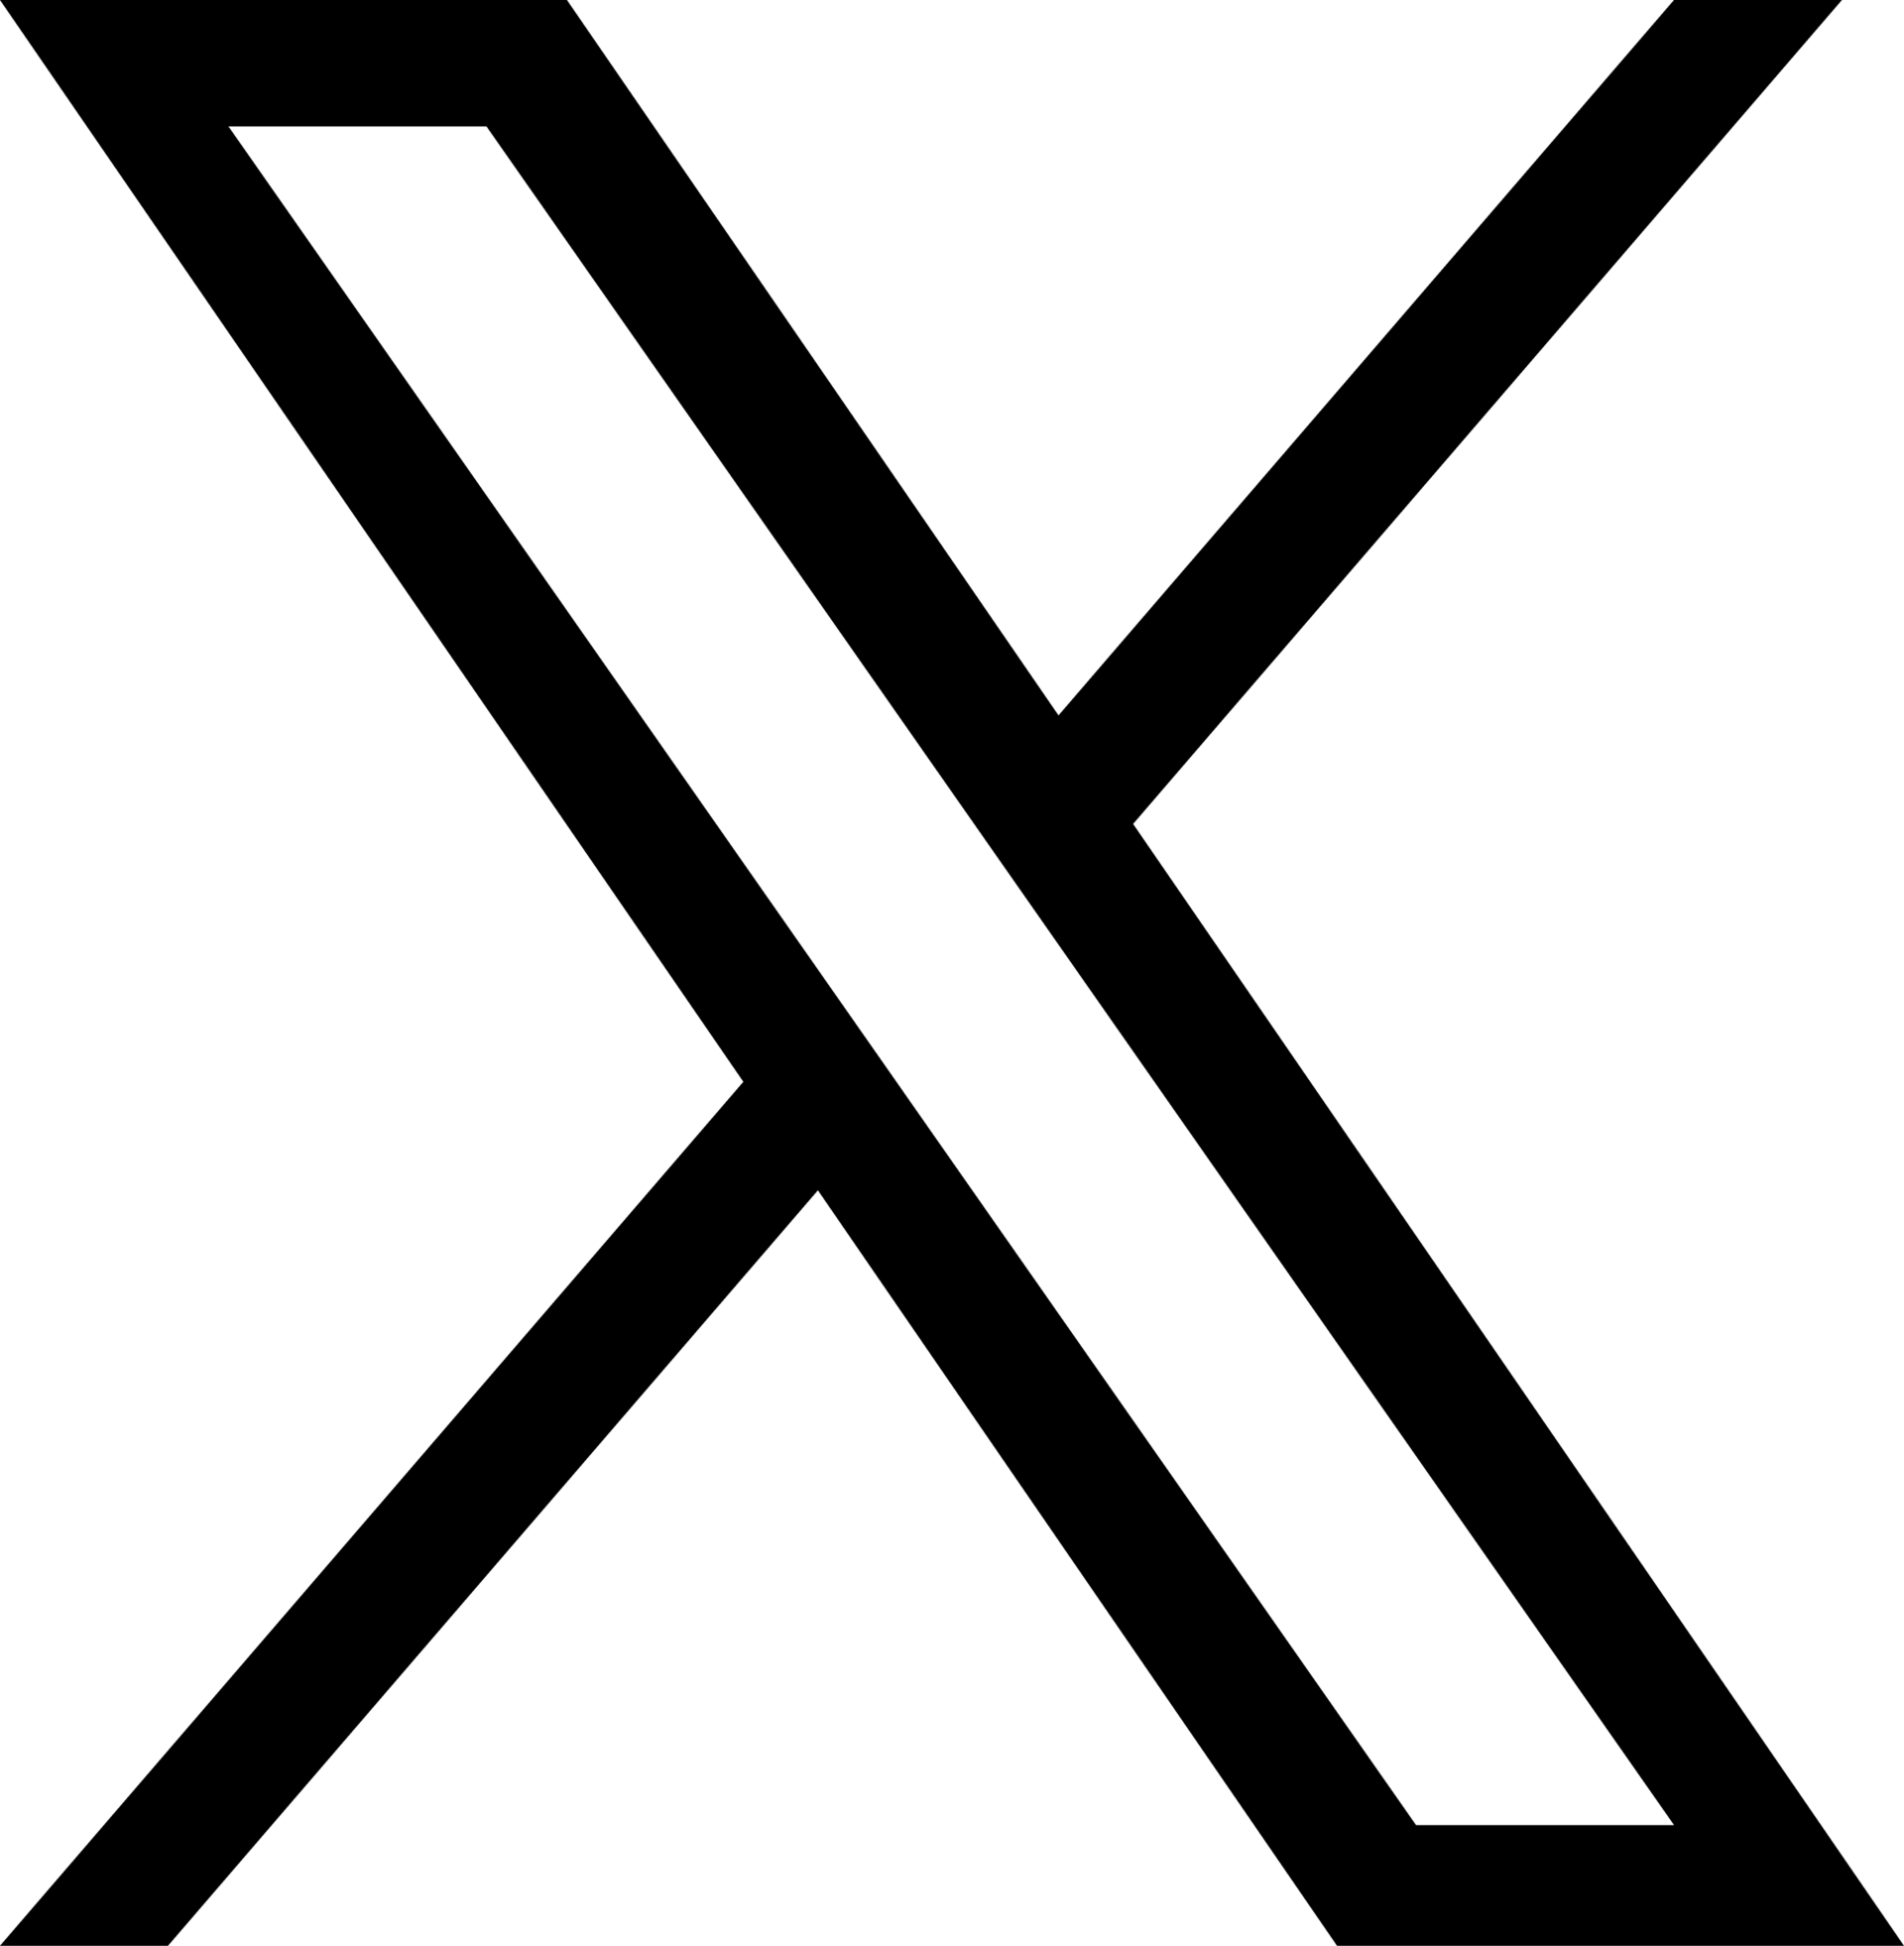 Free Twitter X Logo Black Round SVG, PNG Icon, Symbol. Download Image.